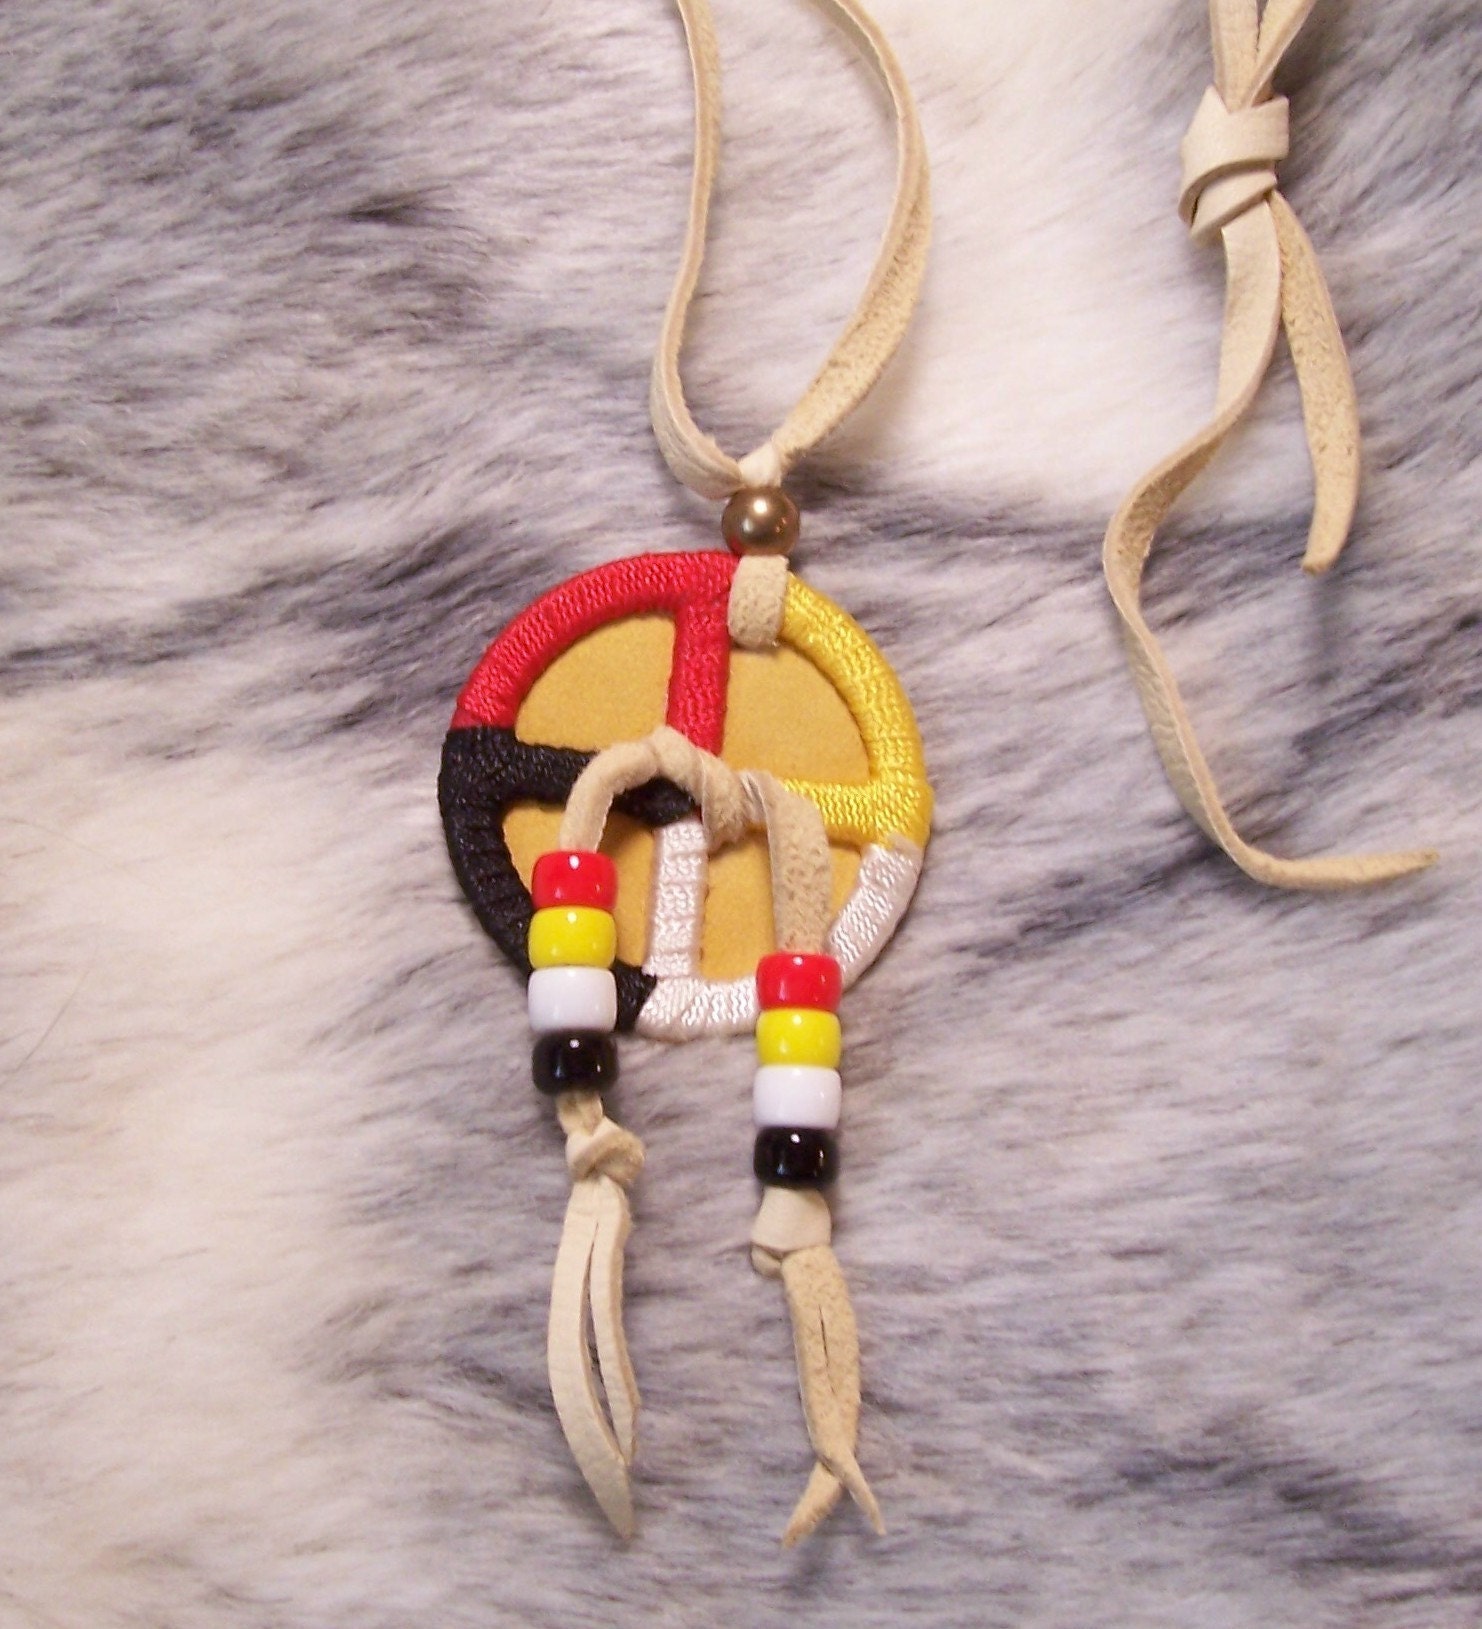 Lakota Medicine Wheel. Lakota Medicine Wheel Necklace